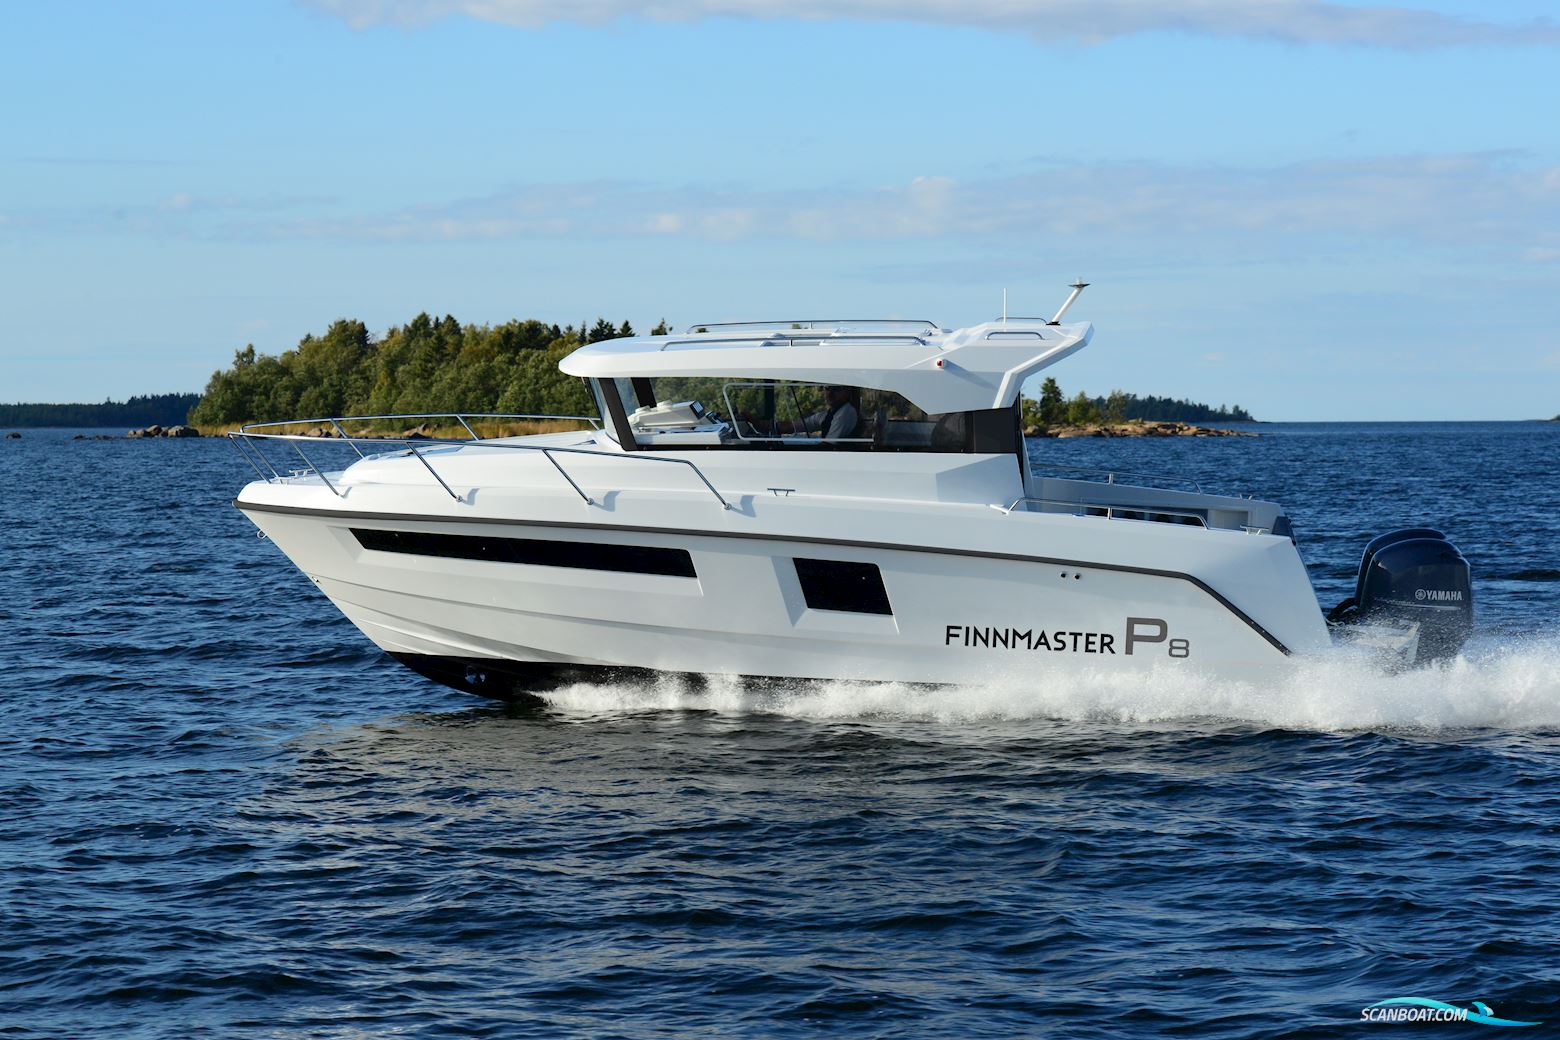 Finnmaster P8 Motorbåt 2022, med Yamaha F200Xca motor, Danmark